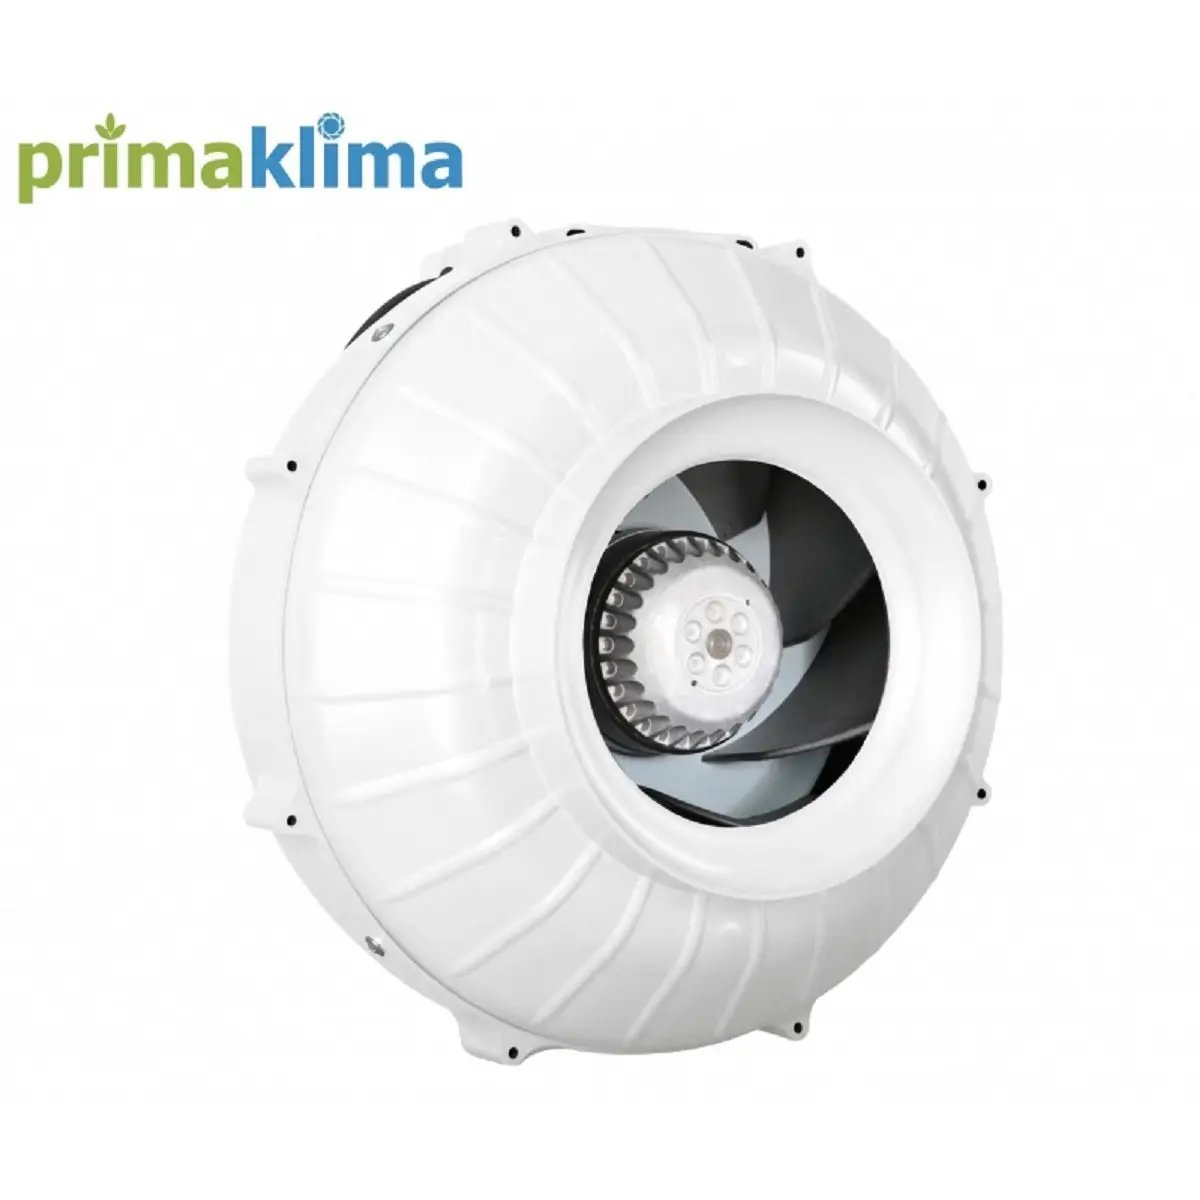 L'extracteur d'air Prima Klima PK 200-L pour ventilation en ligne et culture indoor